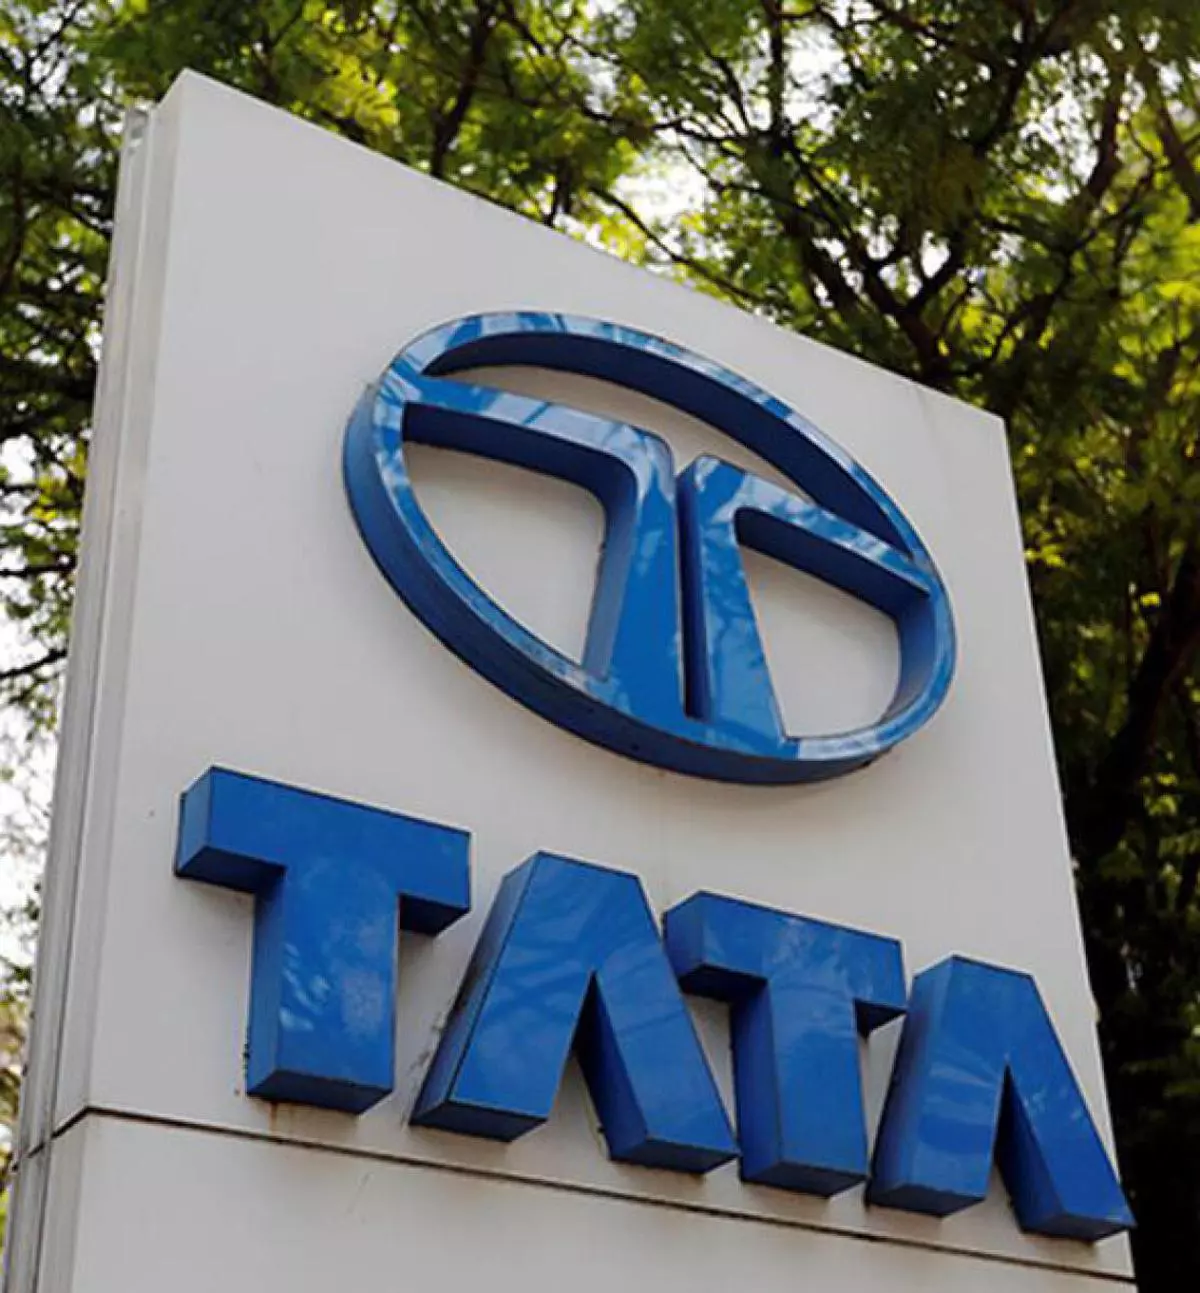 Tata Motors membekali 50% tenaga kerjanya dengan teknologi otomotif modern